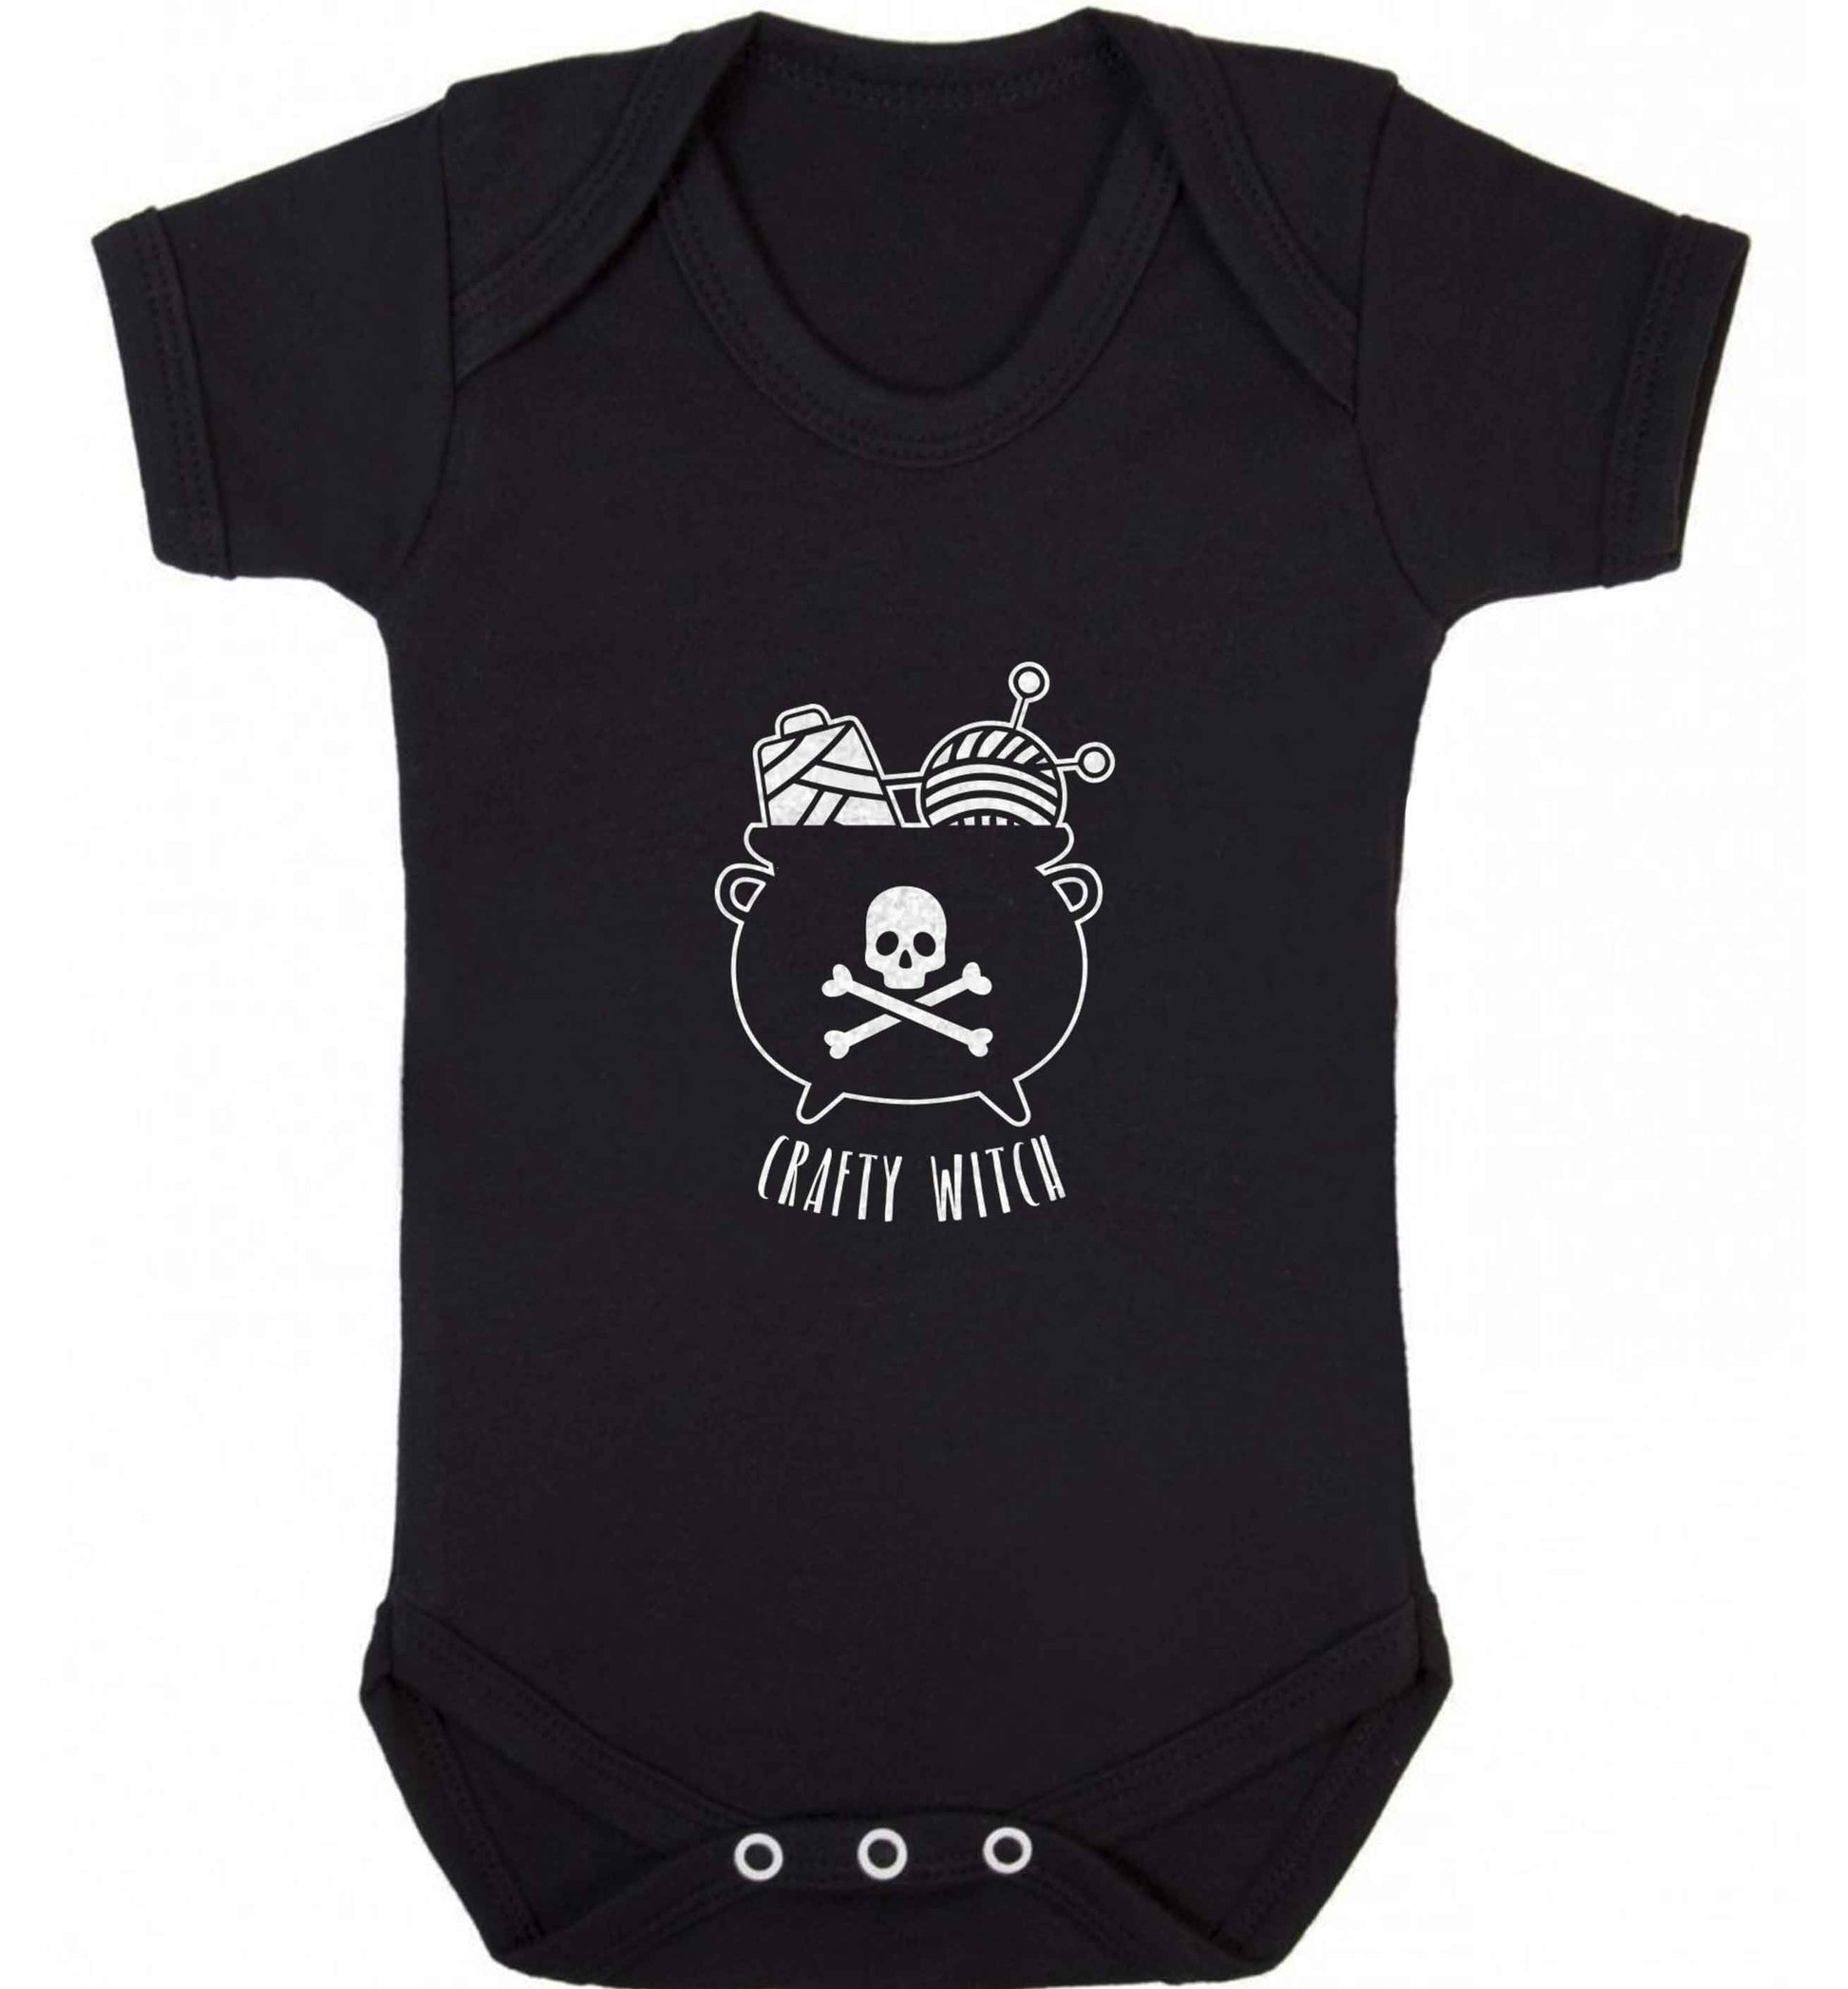 Crafty witch baby vest black 18-24 months